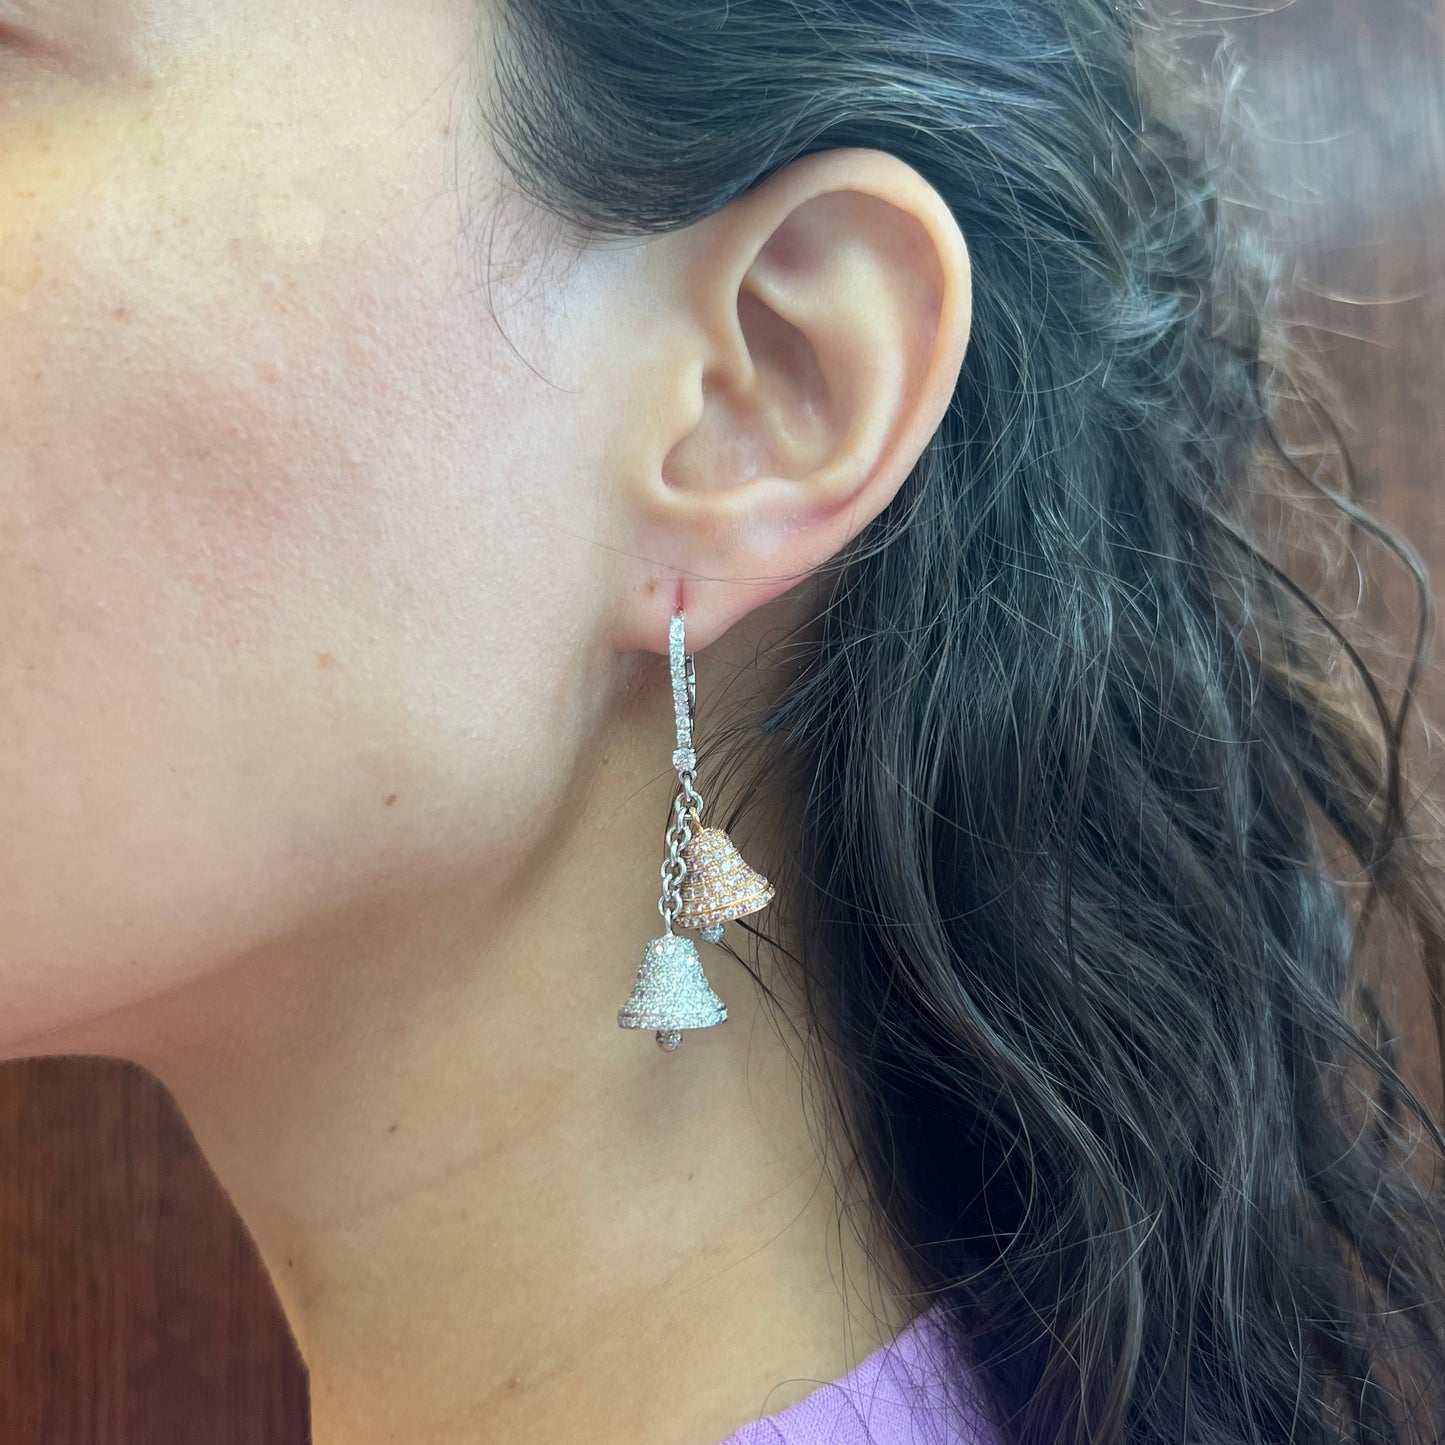 Post-1980s 18KT White Gold Pink & White Diamond Bell Earrings on ear